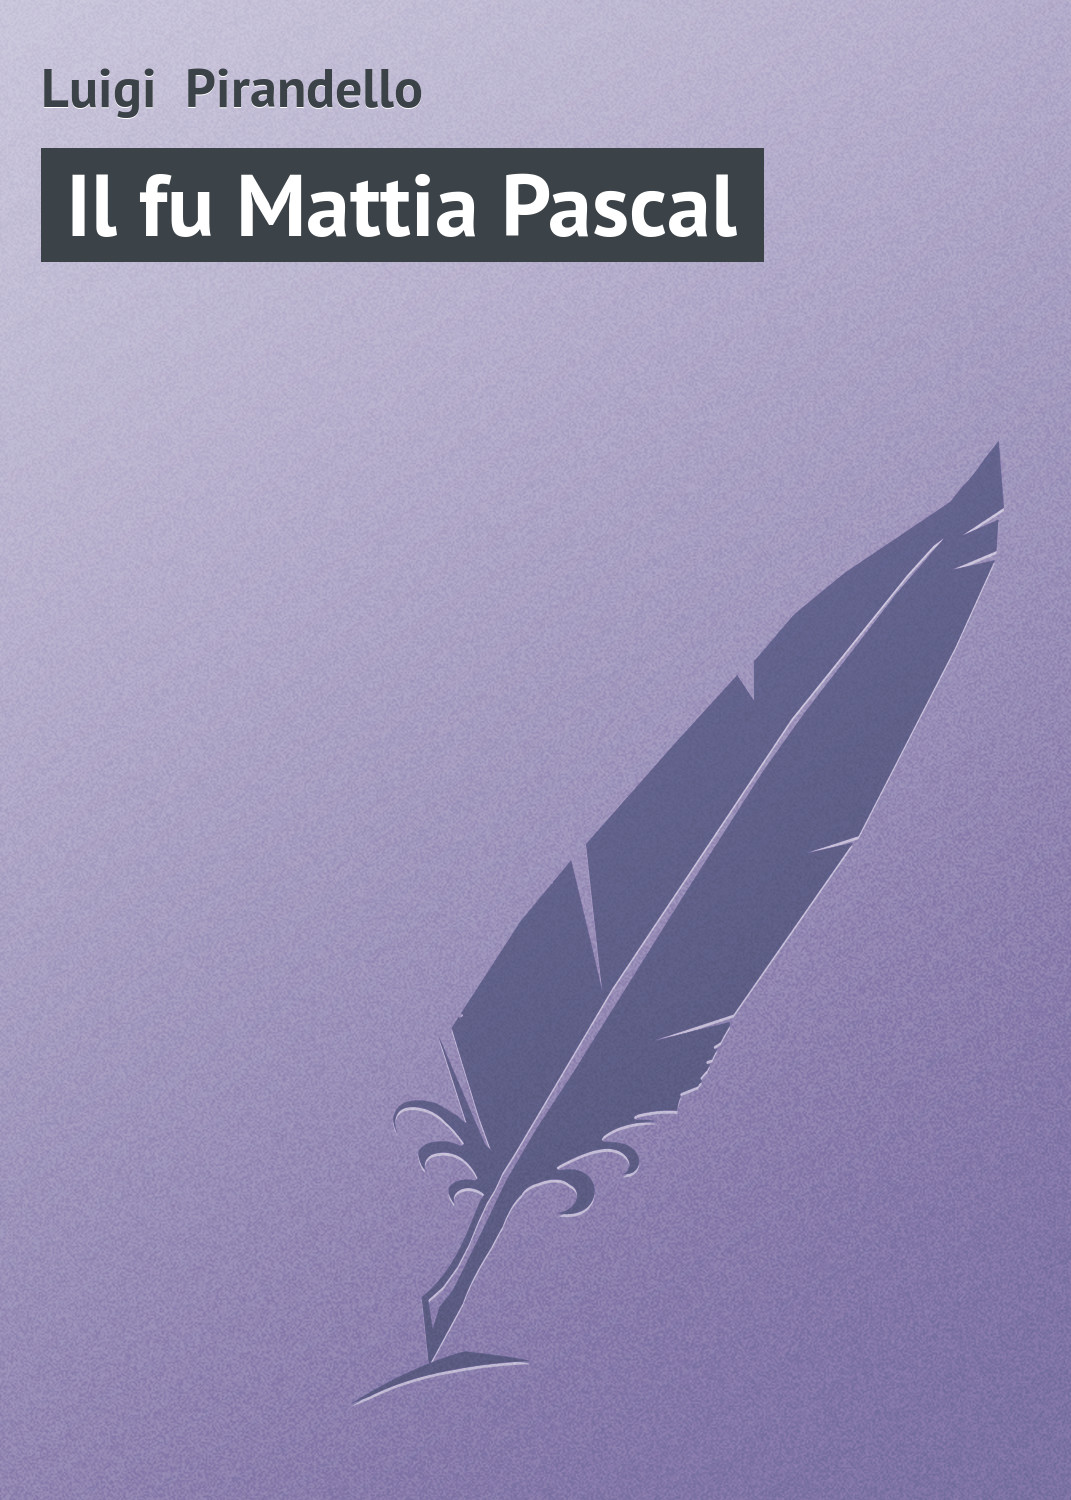 Книга Il fu Mattia Pascal из серии , созданная Luigi Pirandello, может относится к жанру Зарубежная старинная литература, Зарубежная классика. Стоимость электронной книги Il fu Mattia Pascal с идентификатором 21103278 составляет 5.99 руб.